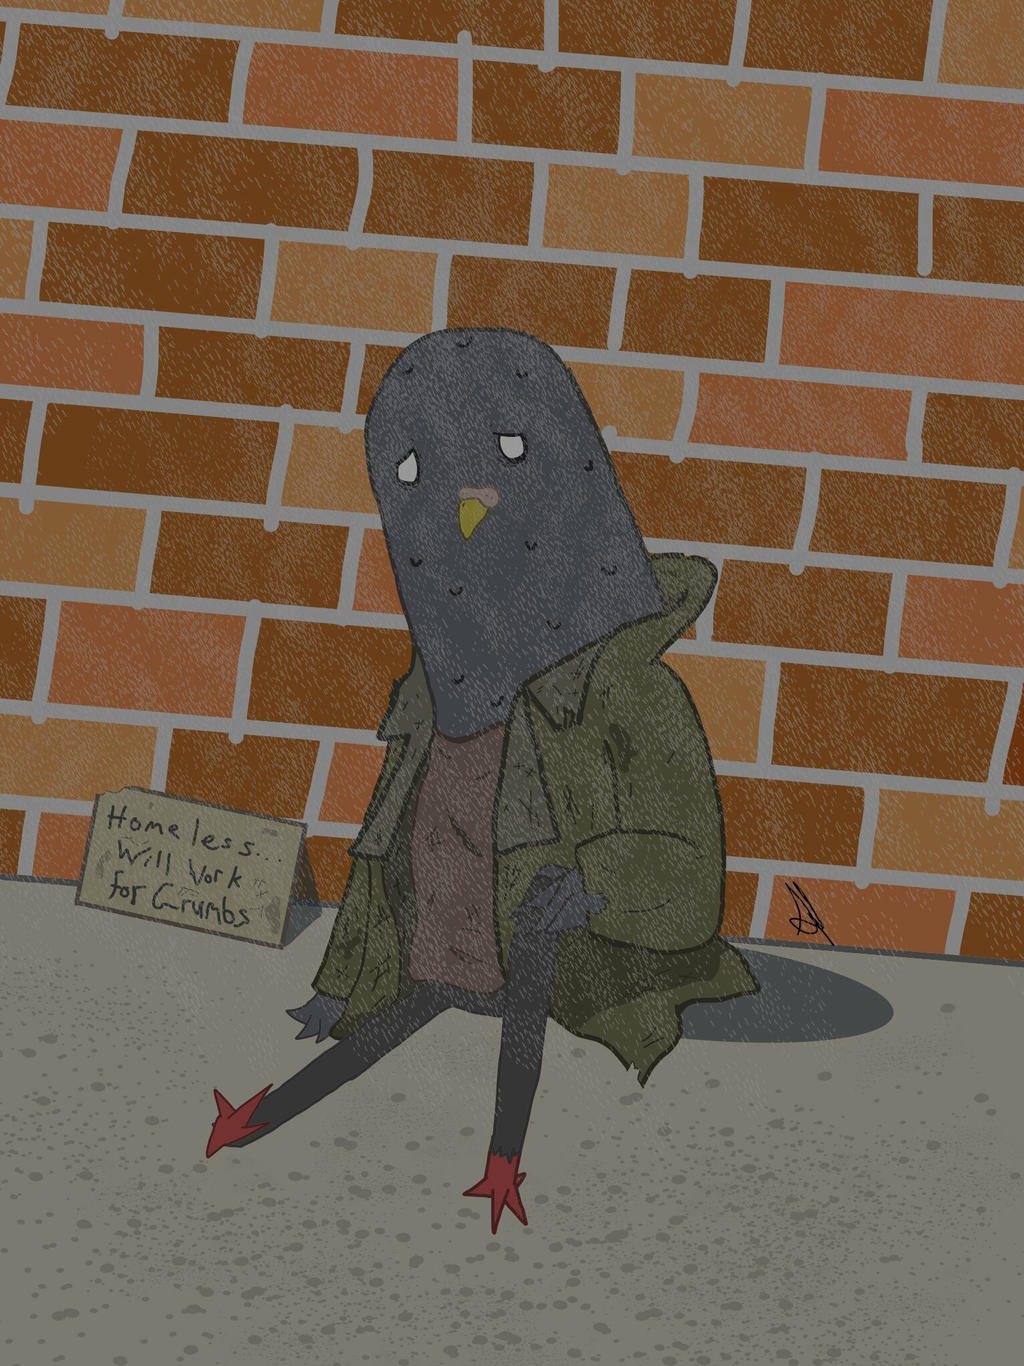 Pigeon homeless NY Daily